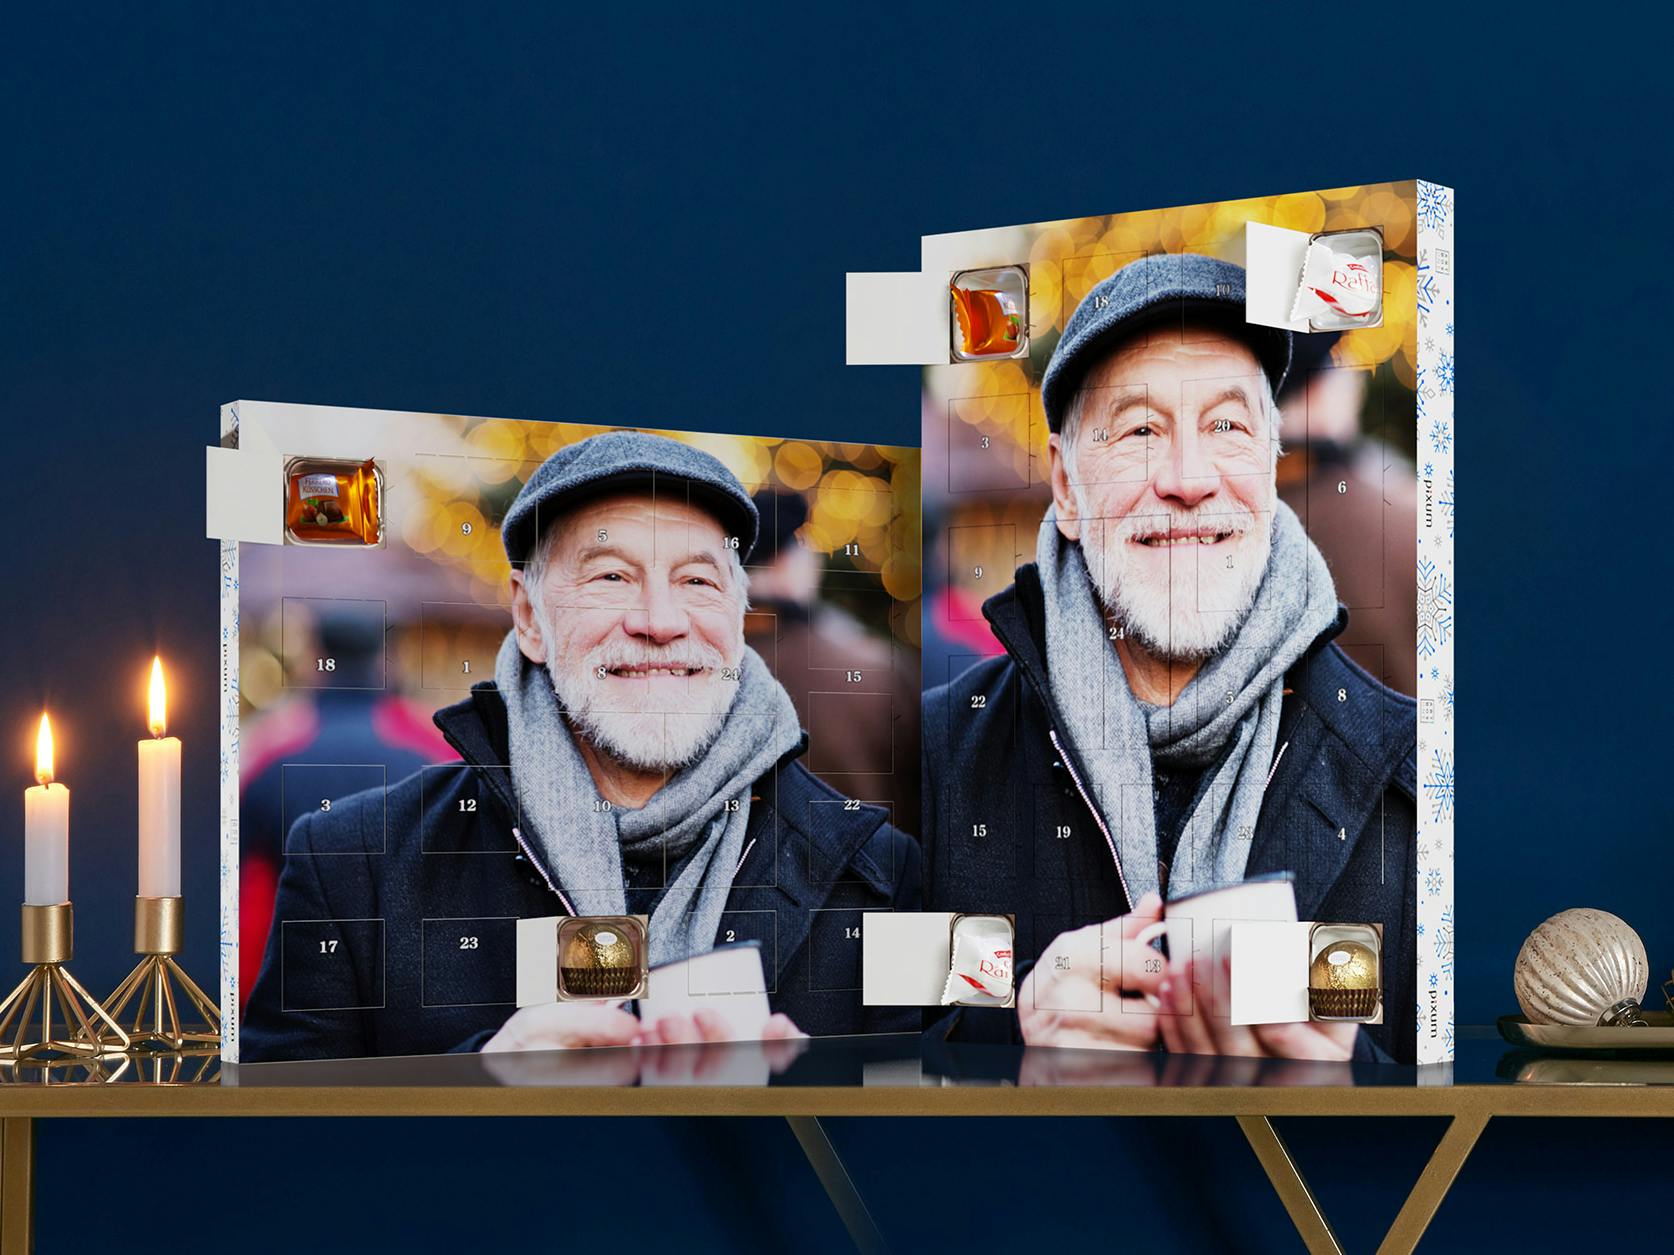 Calendrier de l'Avent avec chocolats Ferrero et une photo d'un homme âgé souriant